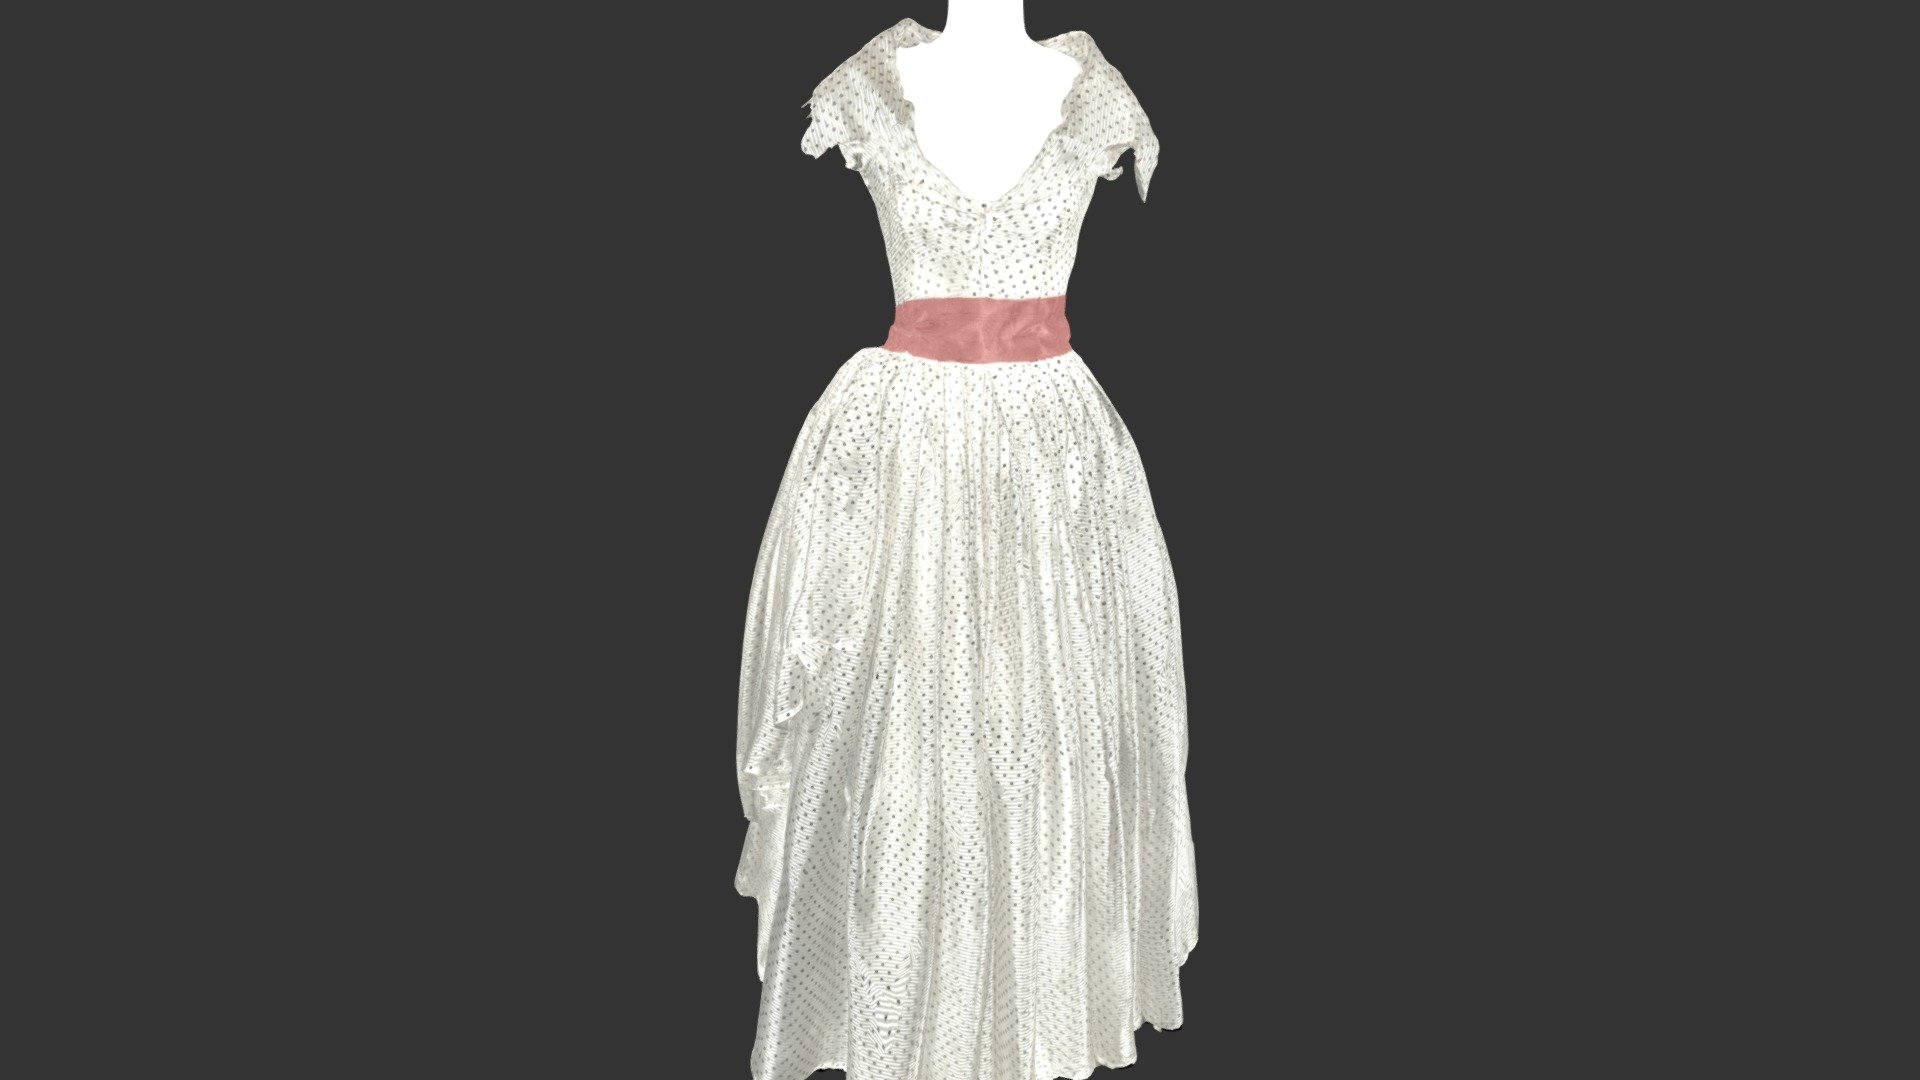 Robes de la collection du Musée Borely à Marseille - Robe Dior optimisée - 3D model by ultimage 3d model